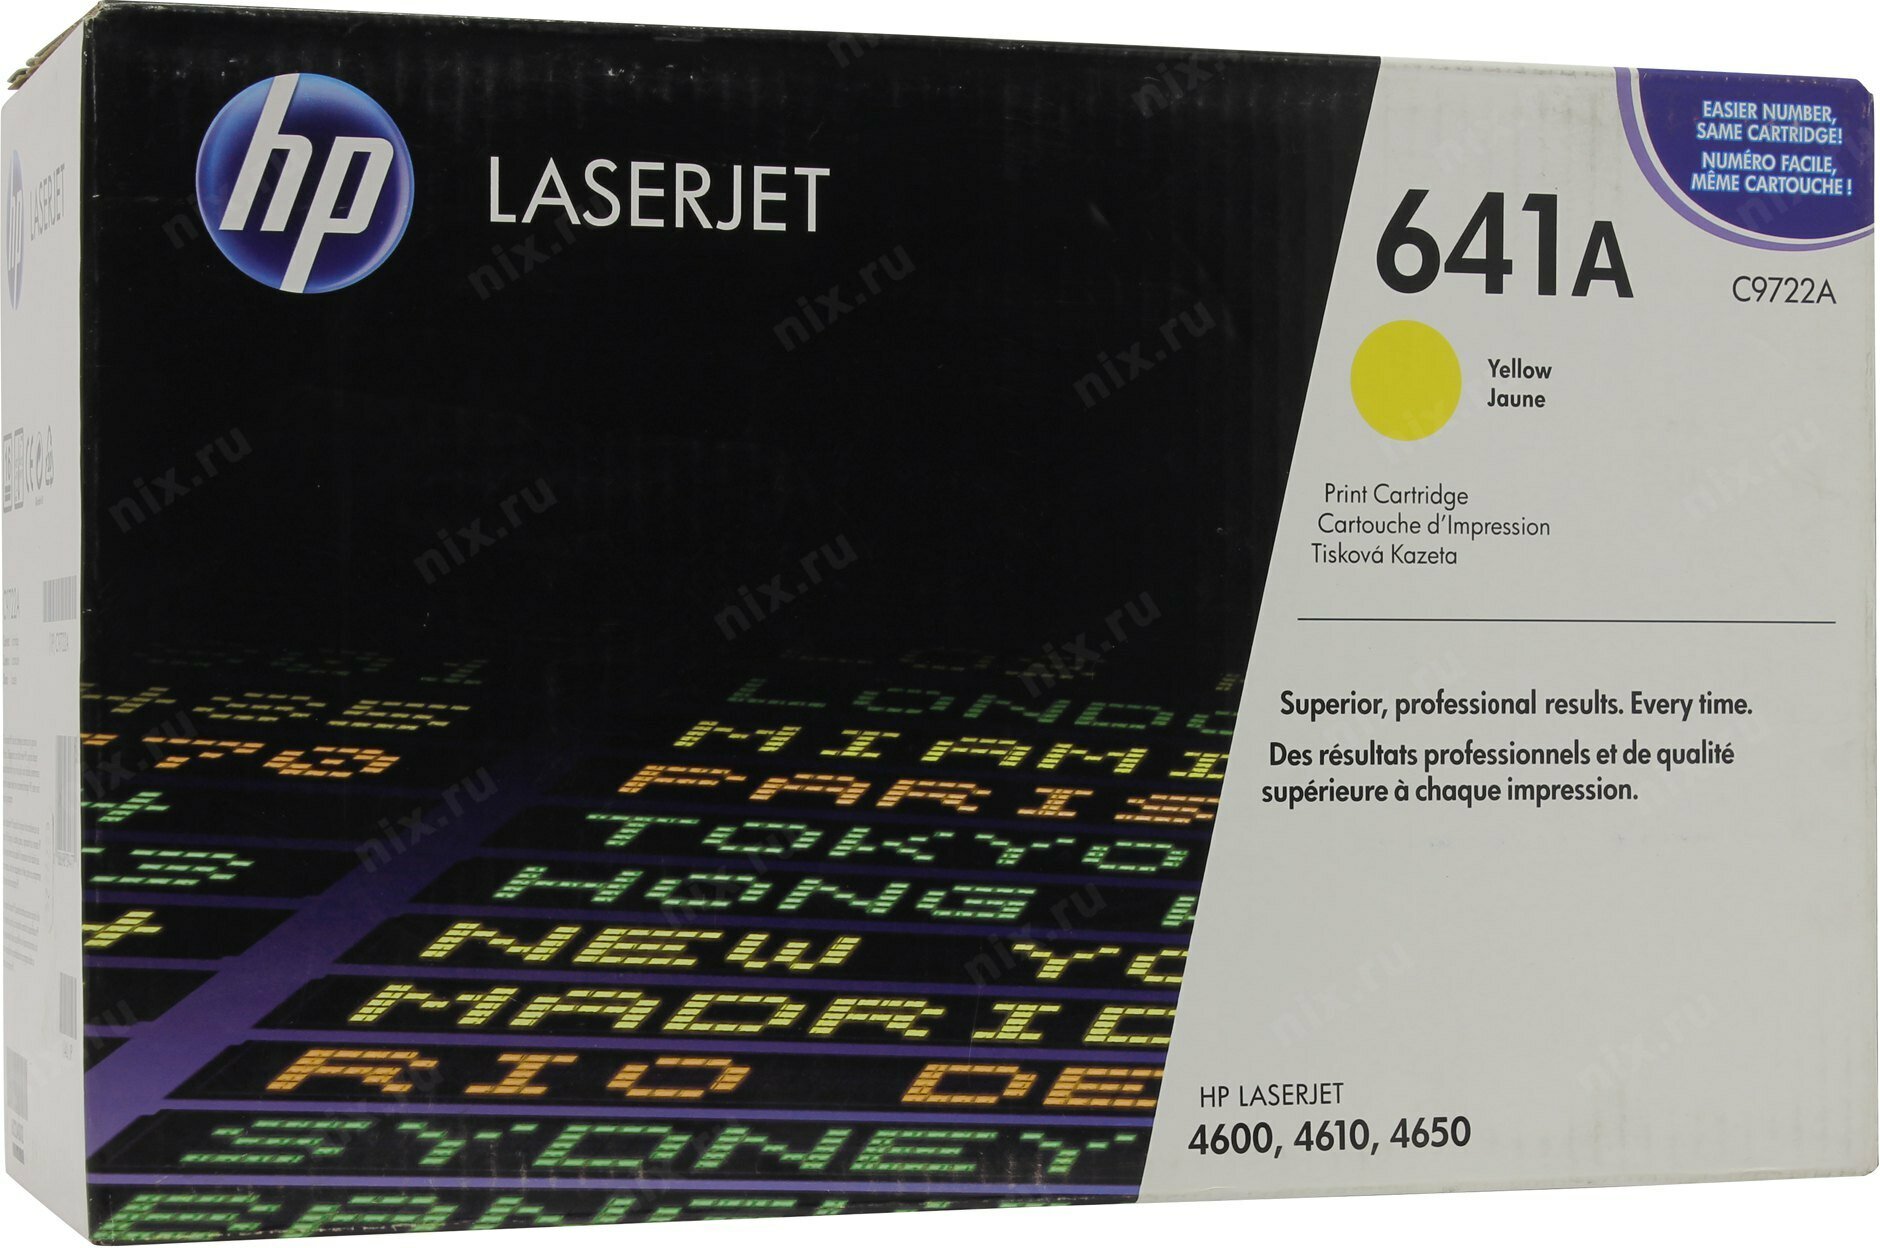 Картридж HP C9722A для лазерного принтера / HP 641A / Желтый